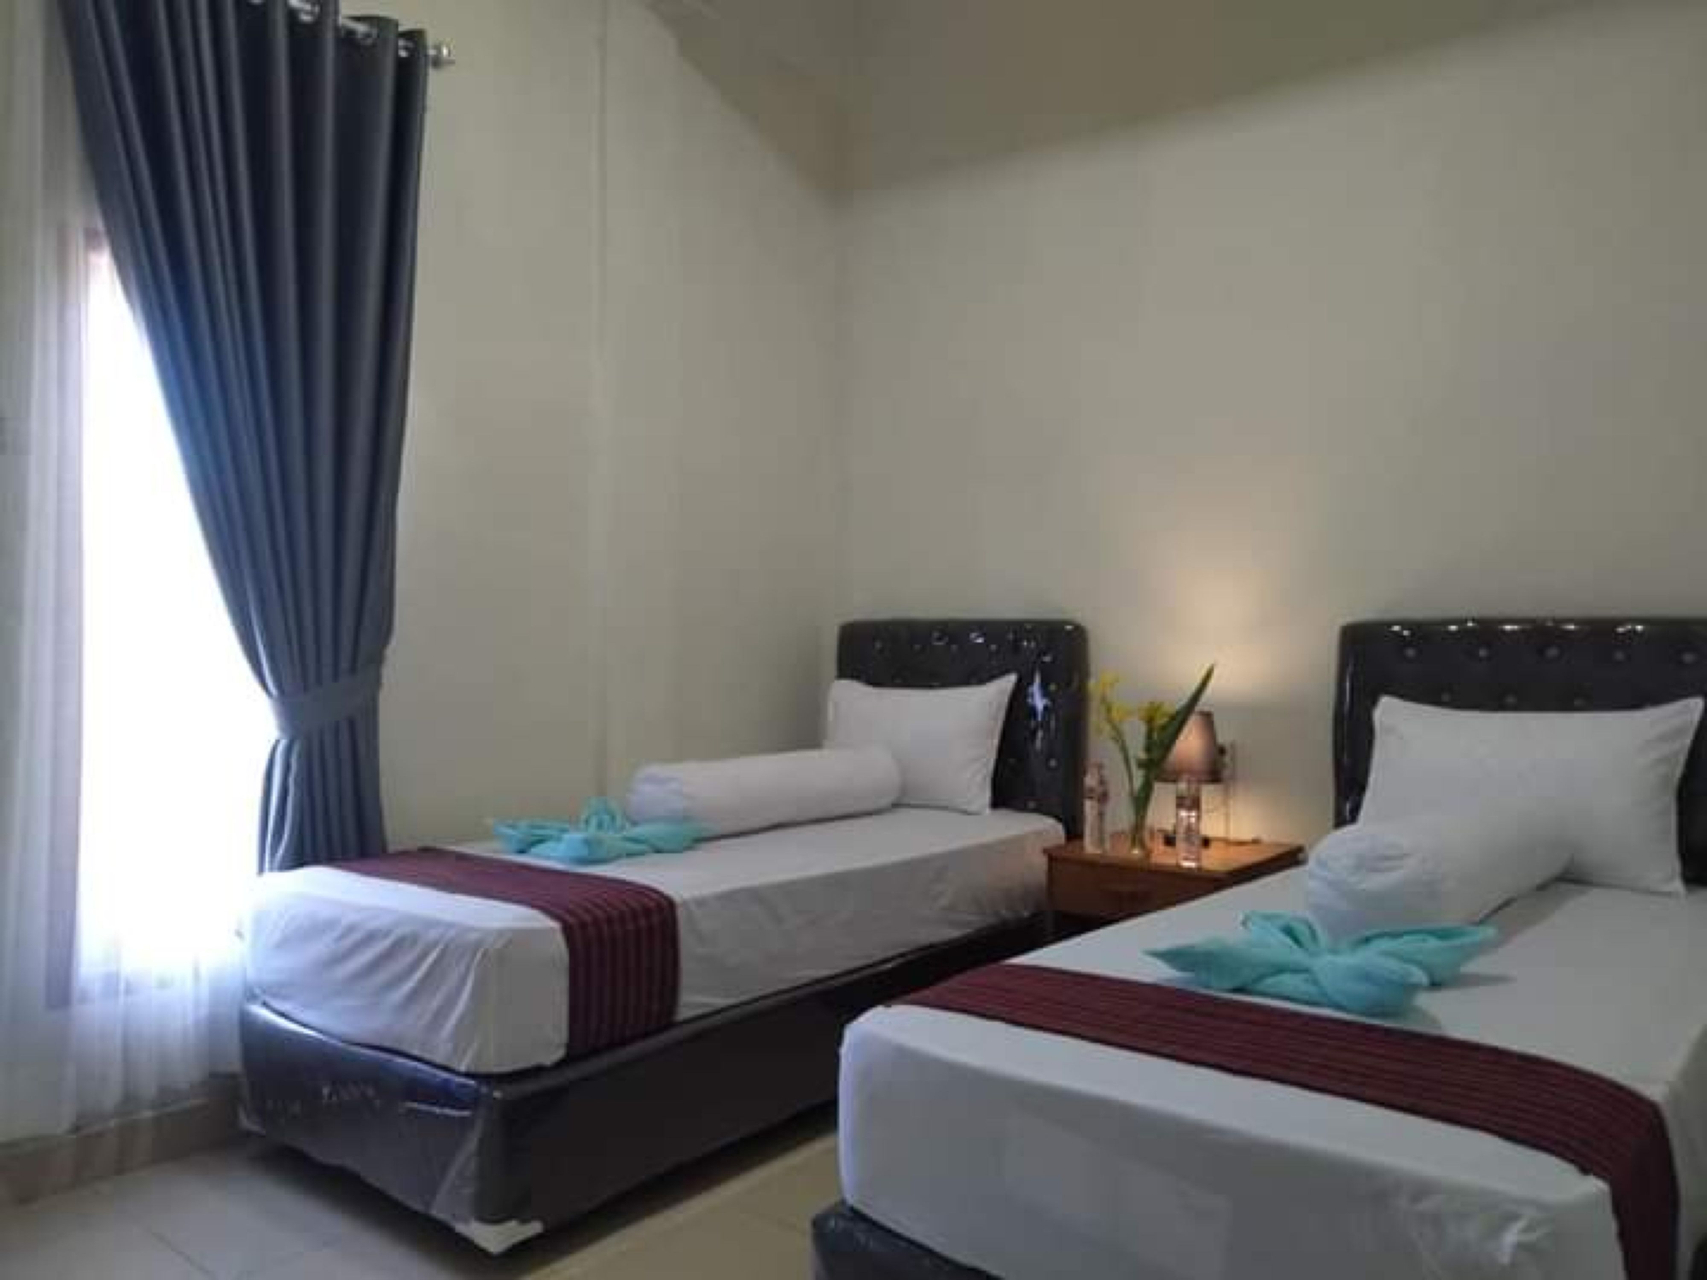 Bedroom 2, Terasawah, Lombok